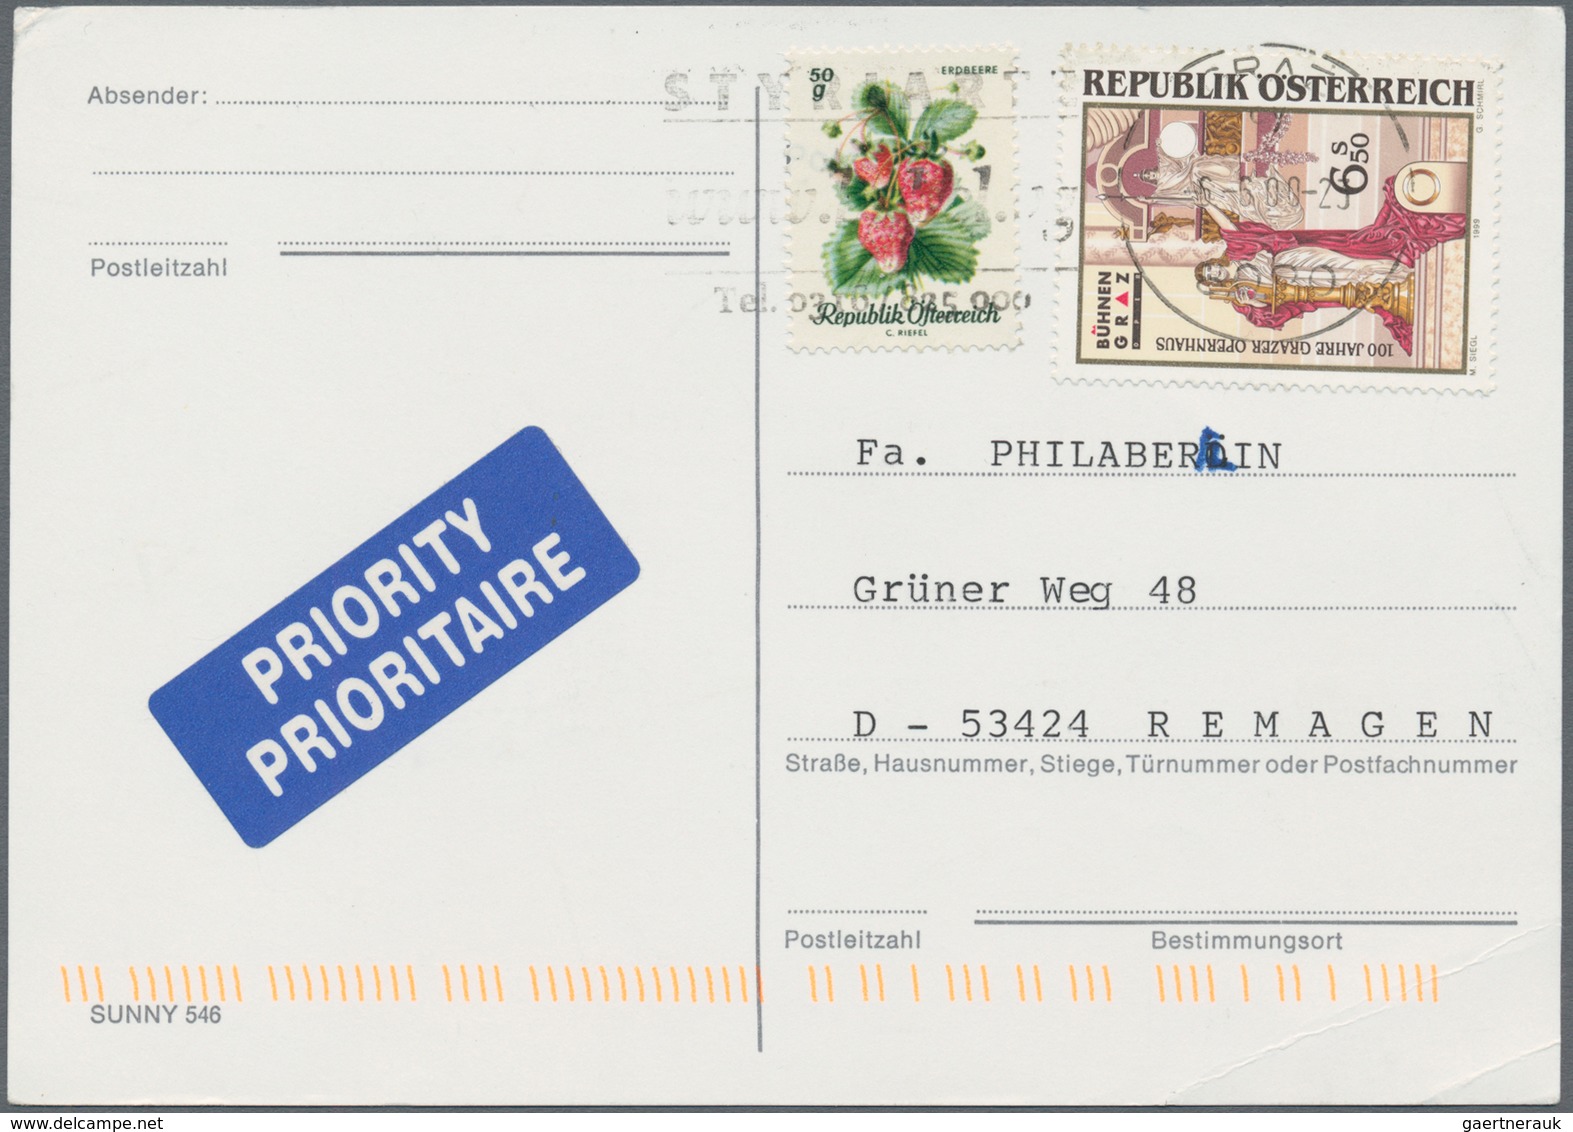 Österreich: 1860/1995 (ca.) Bestand von ca. 1.010 Ganzsachen, Karten, Briefen, dabei einige mit bess